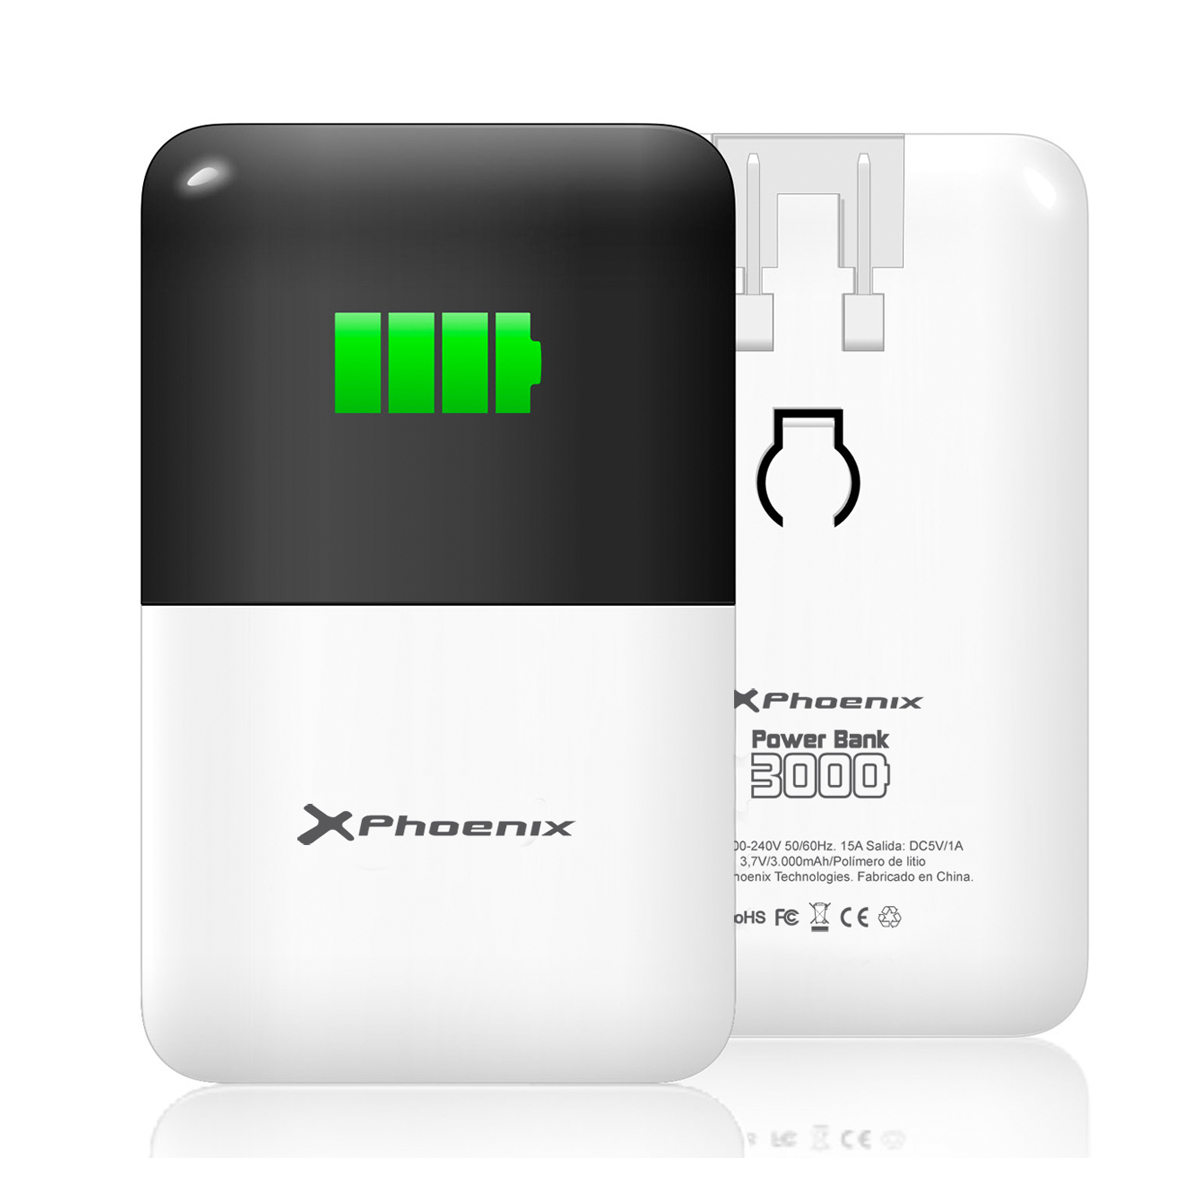 Cargador Phoenix Bank 3000 mah powerbank technologies blanco externa de litio bateria portatil ipad iphone tablet moviles smartphones mp4 gps cualquier dispositivo cargale con usb micro mini apple phpowerbank3000 37